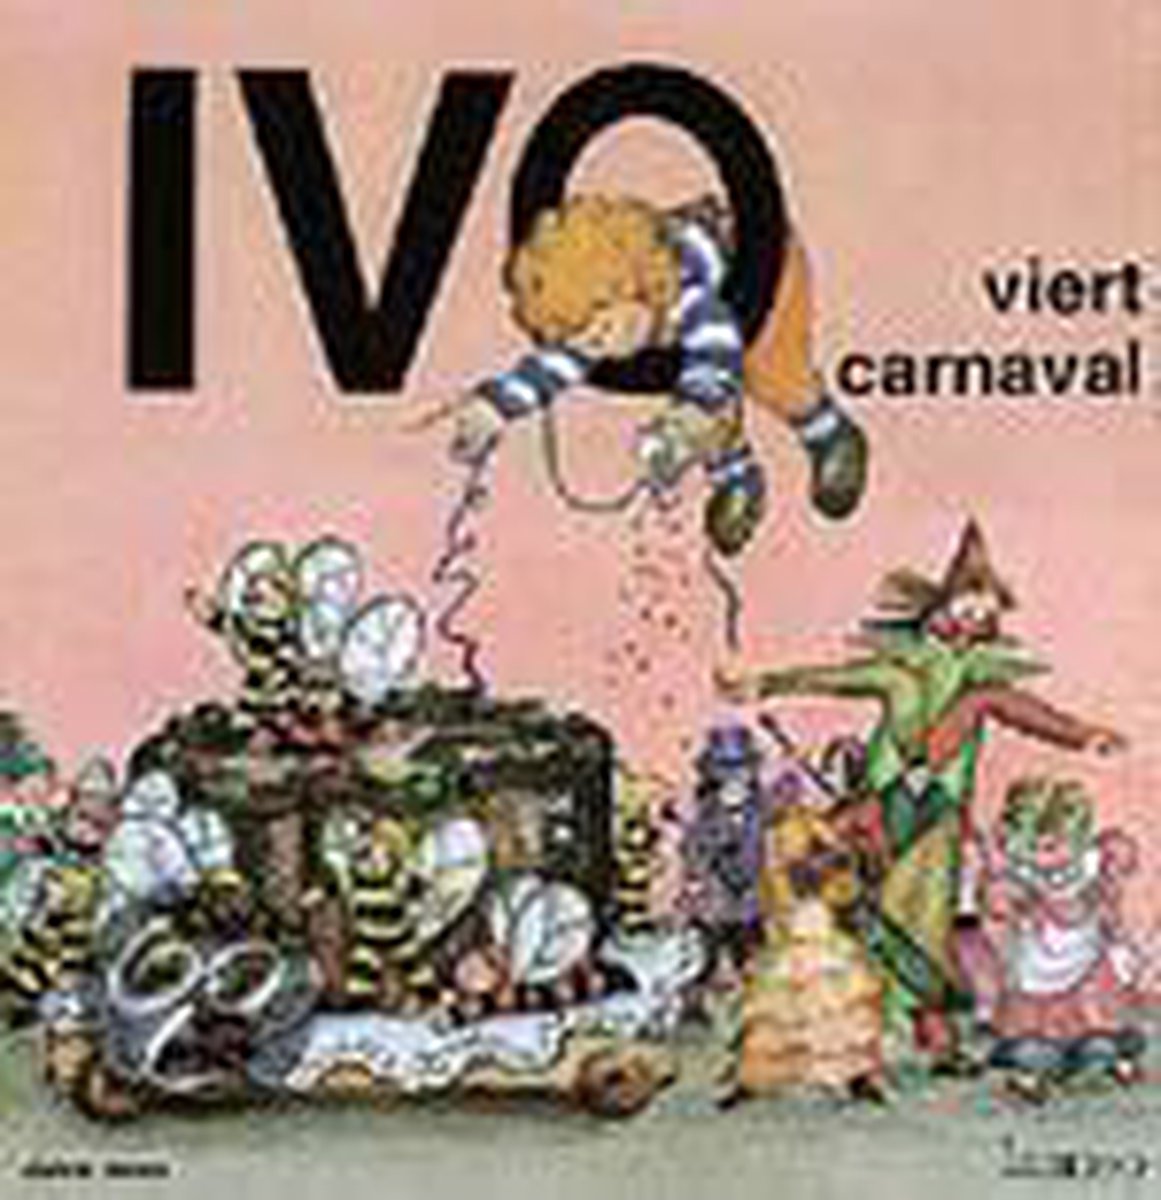 Ivo viert carnaval